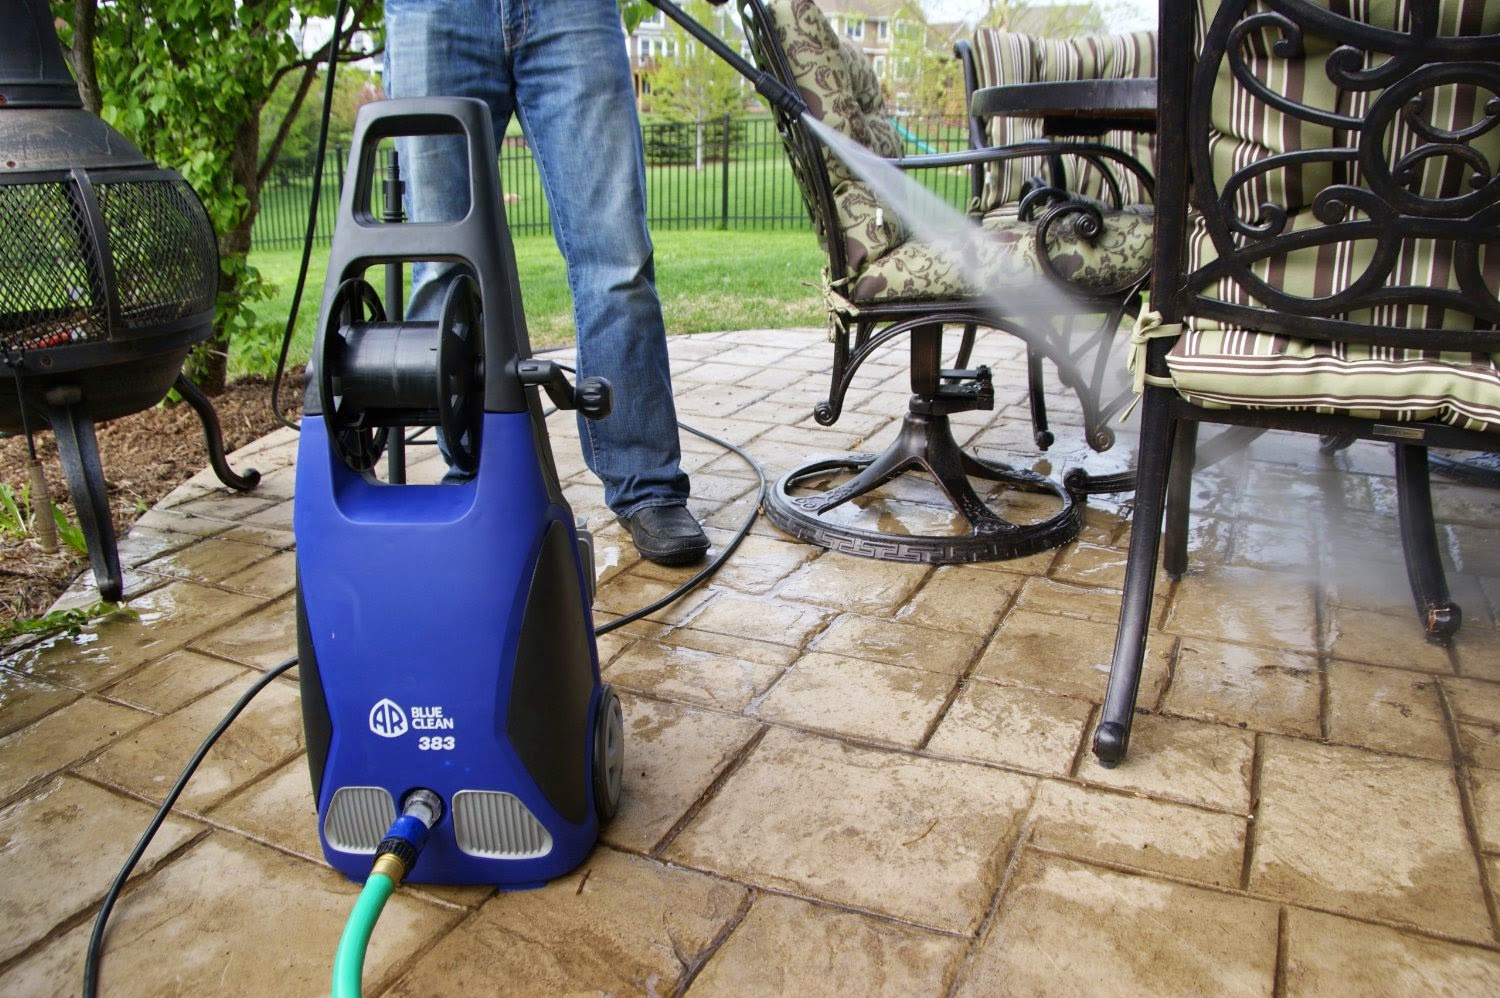 AR Blue Clean Pressure Washer cleans patios, decks, paths, driveways, house sidings & cars